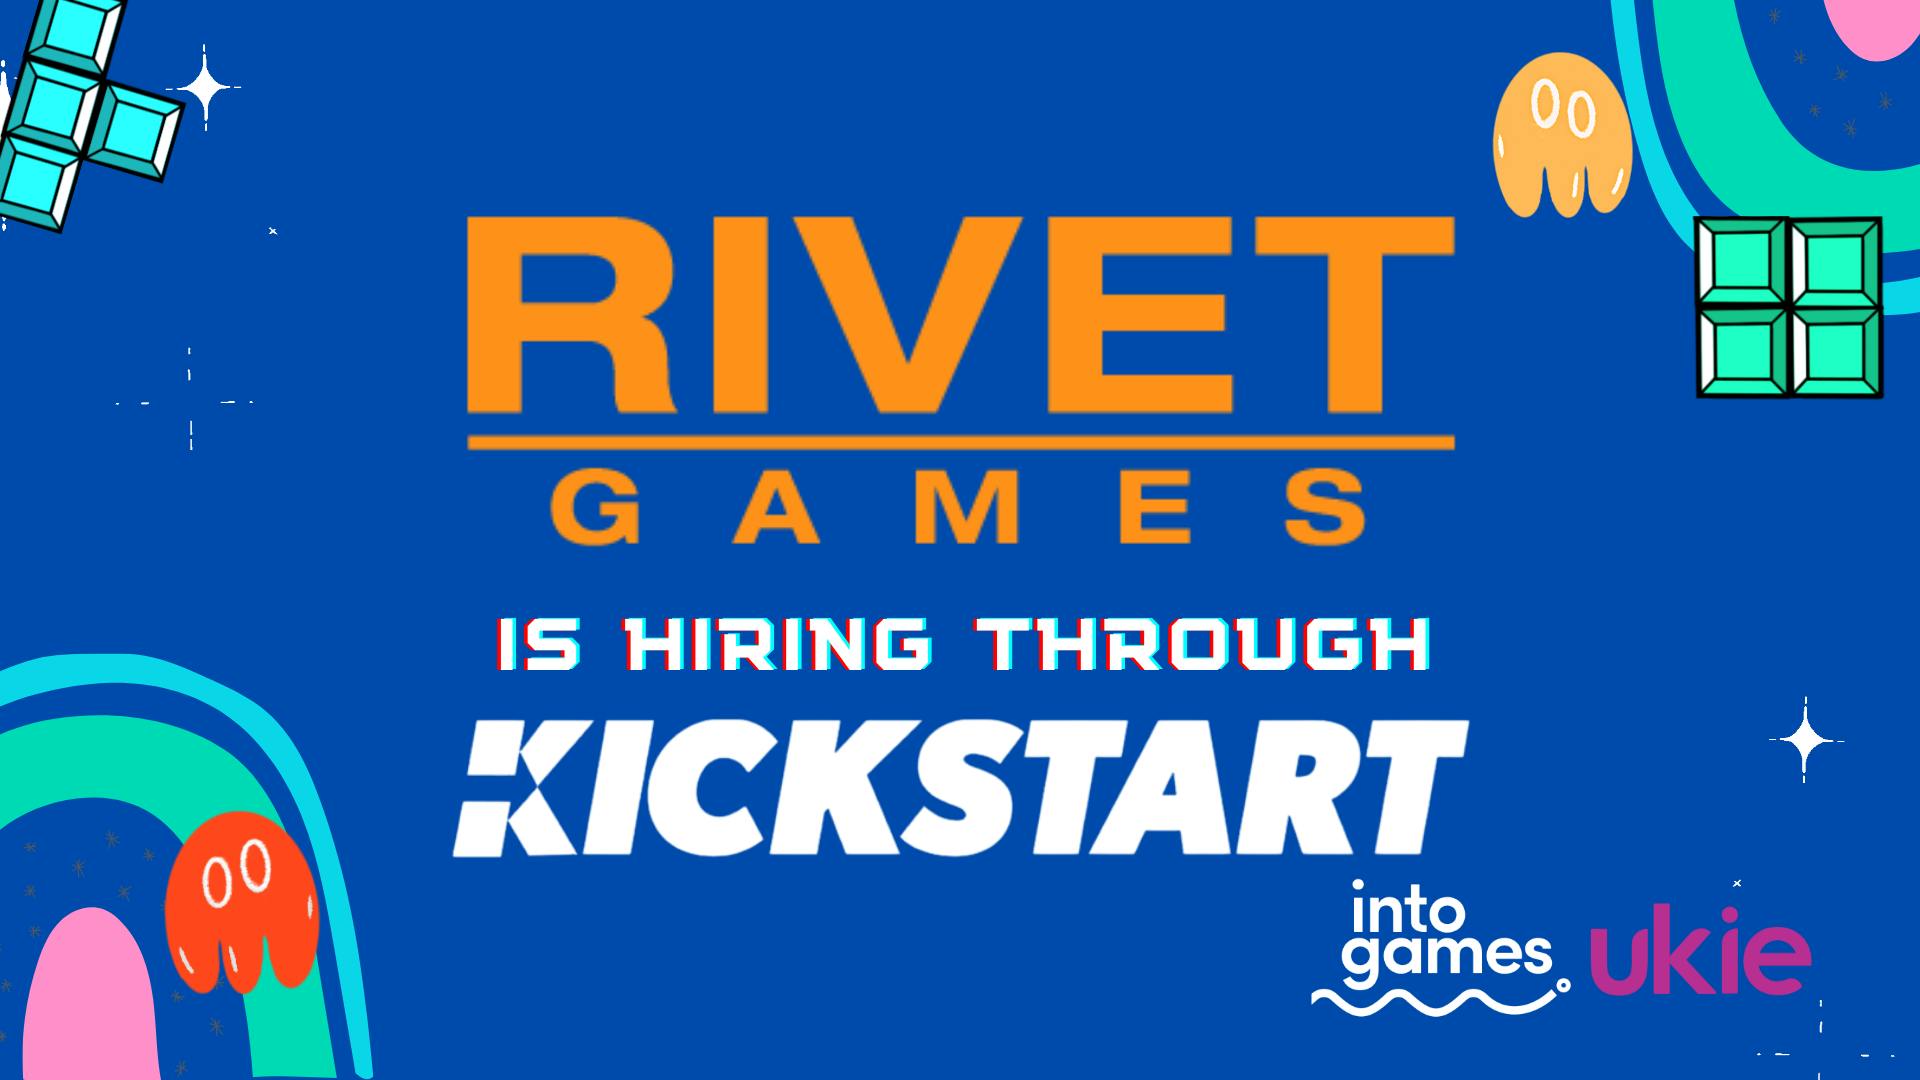 Rivet Games - We're Hiring Through the Kickstart Scheme